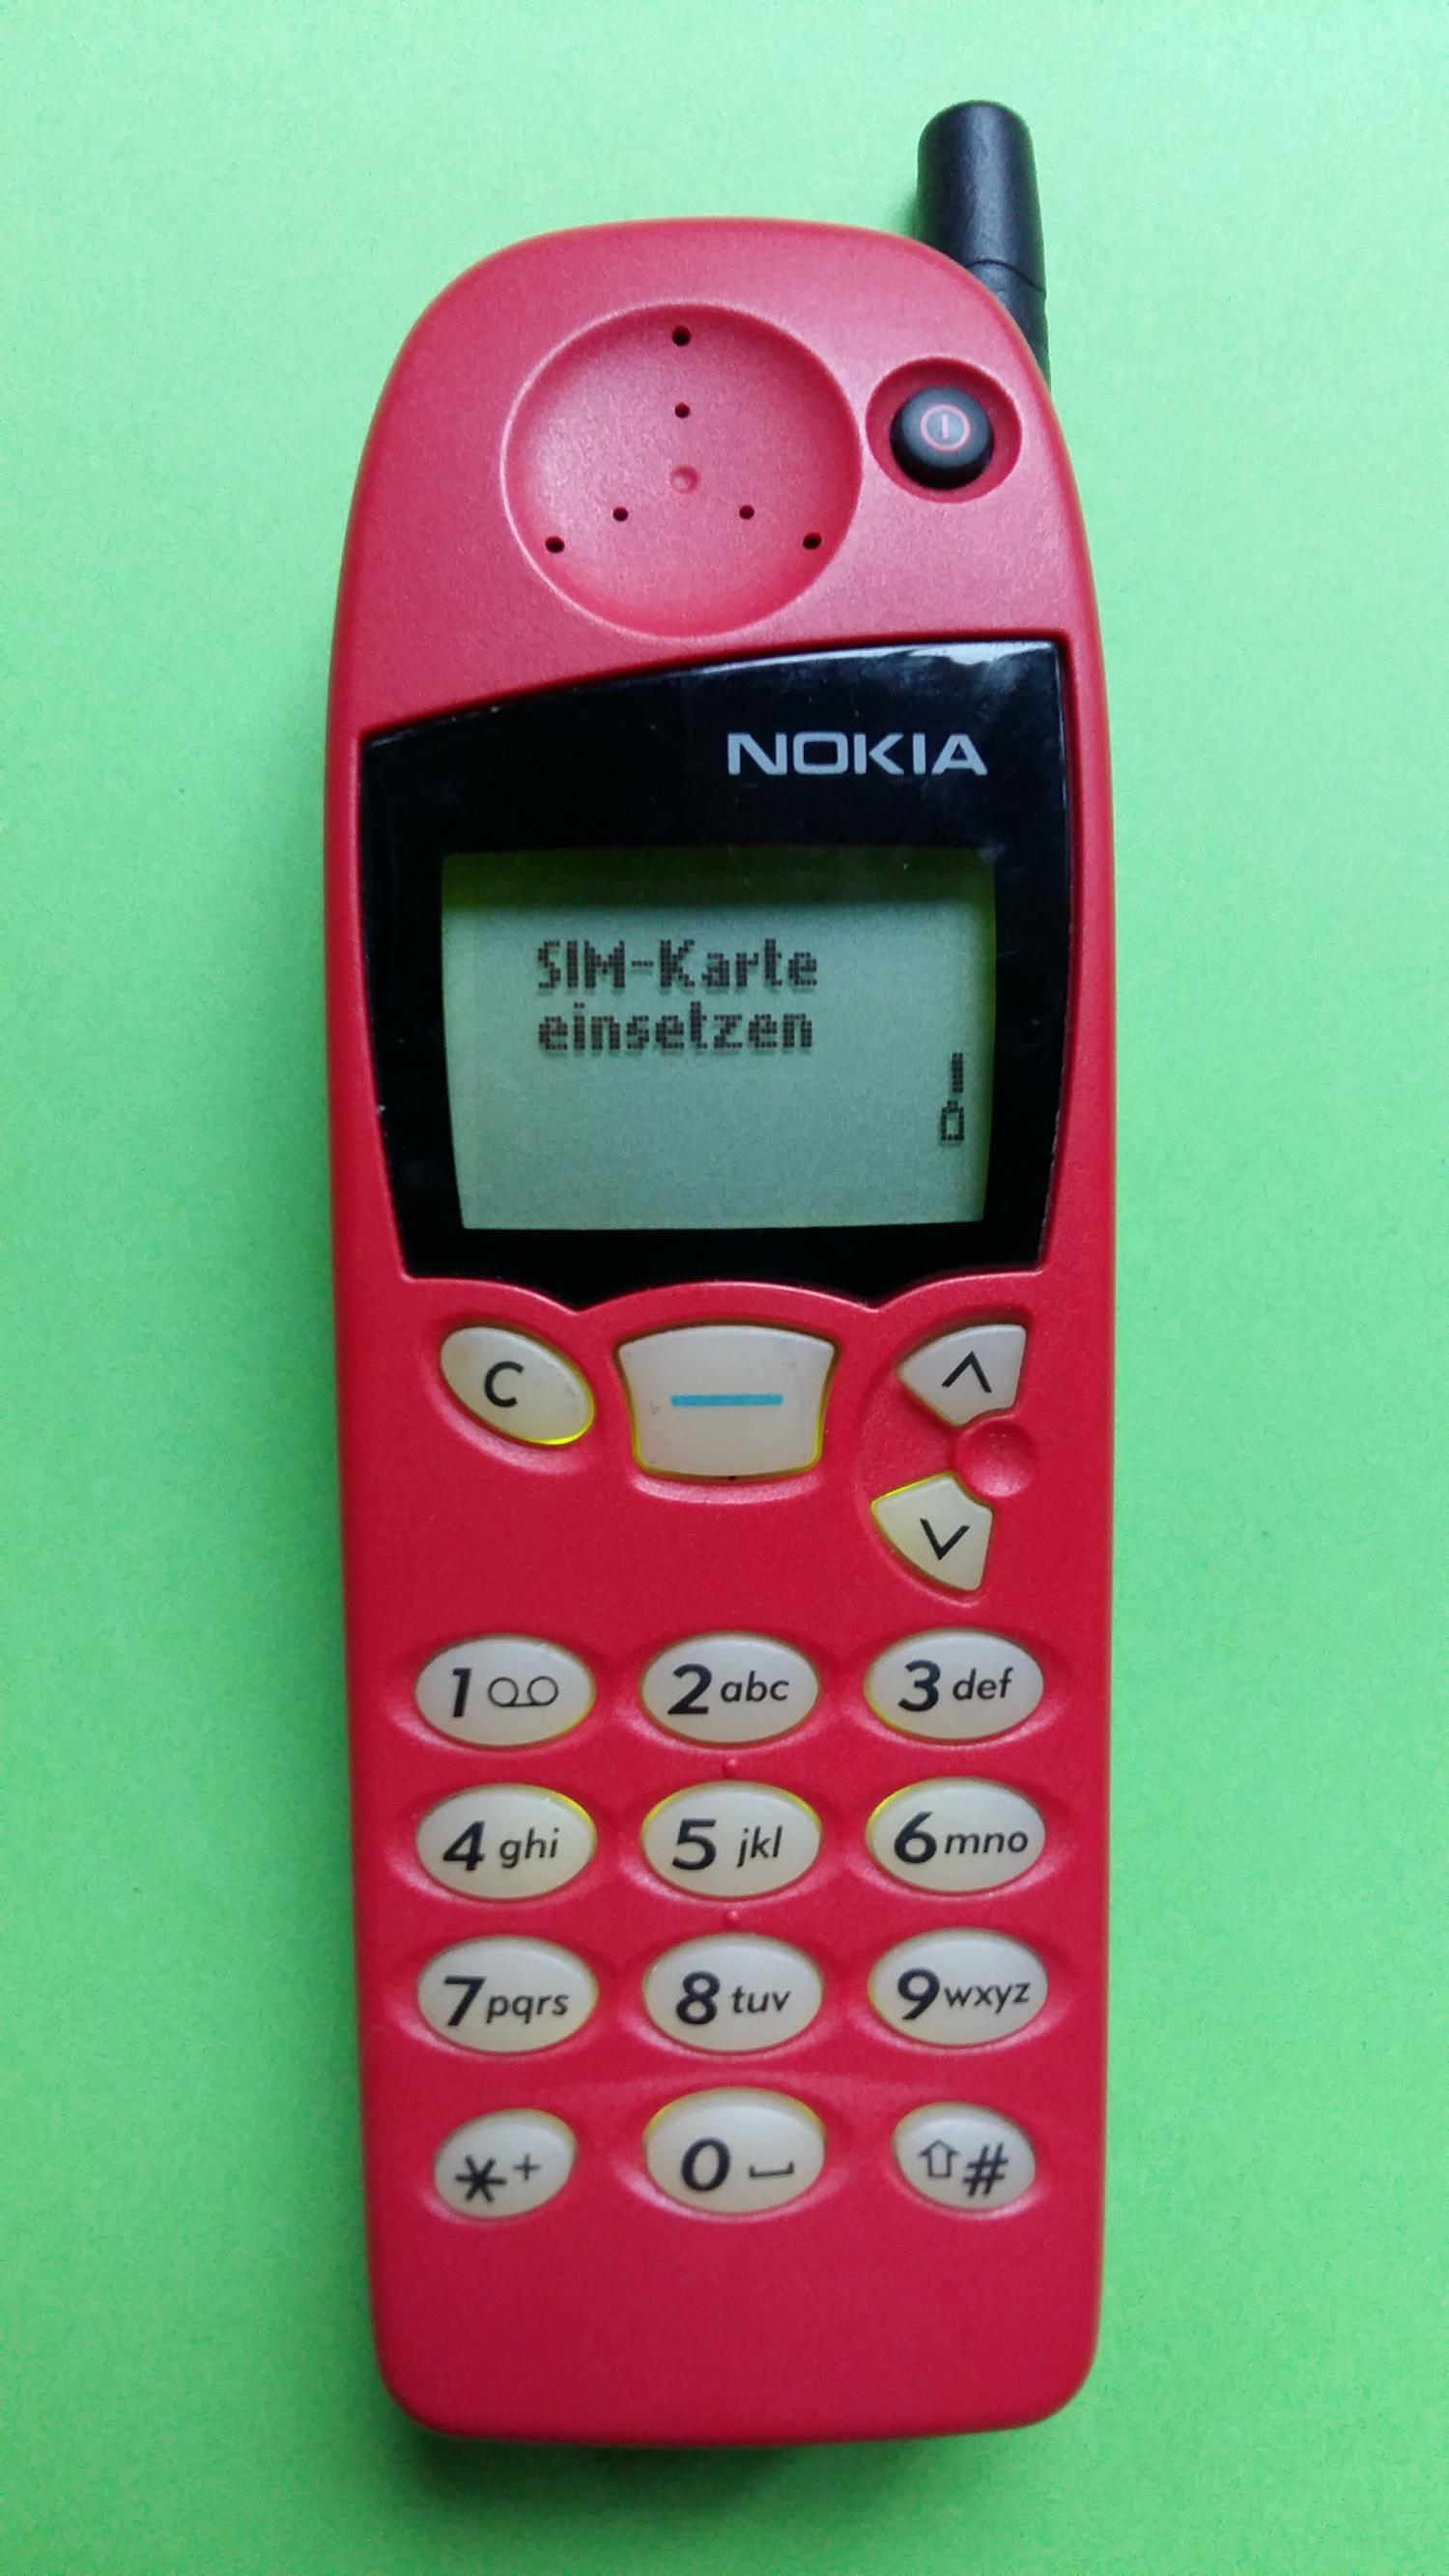 image-7304784-Nokia 5110 (1)1.jpg